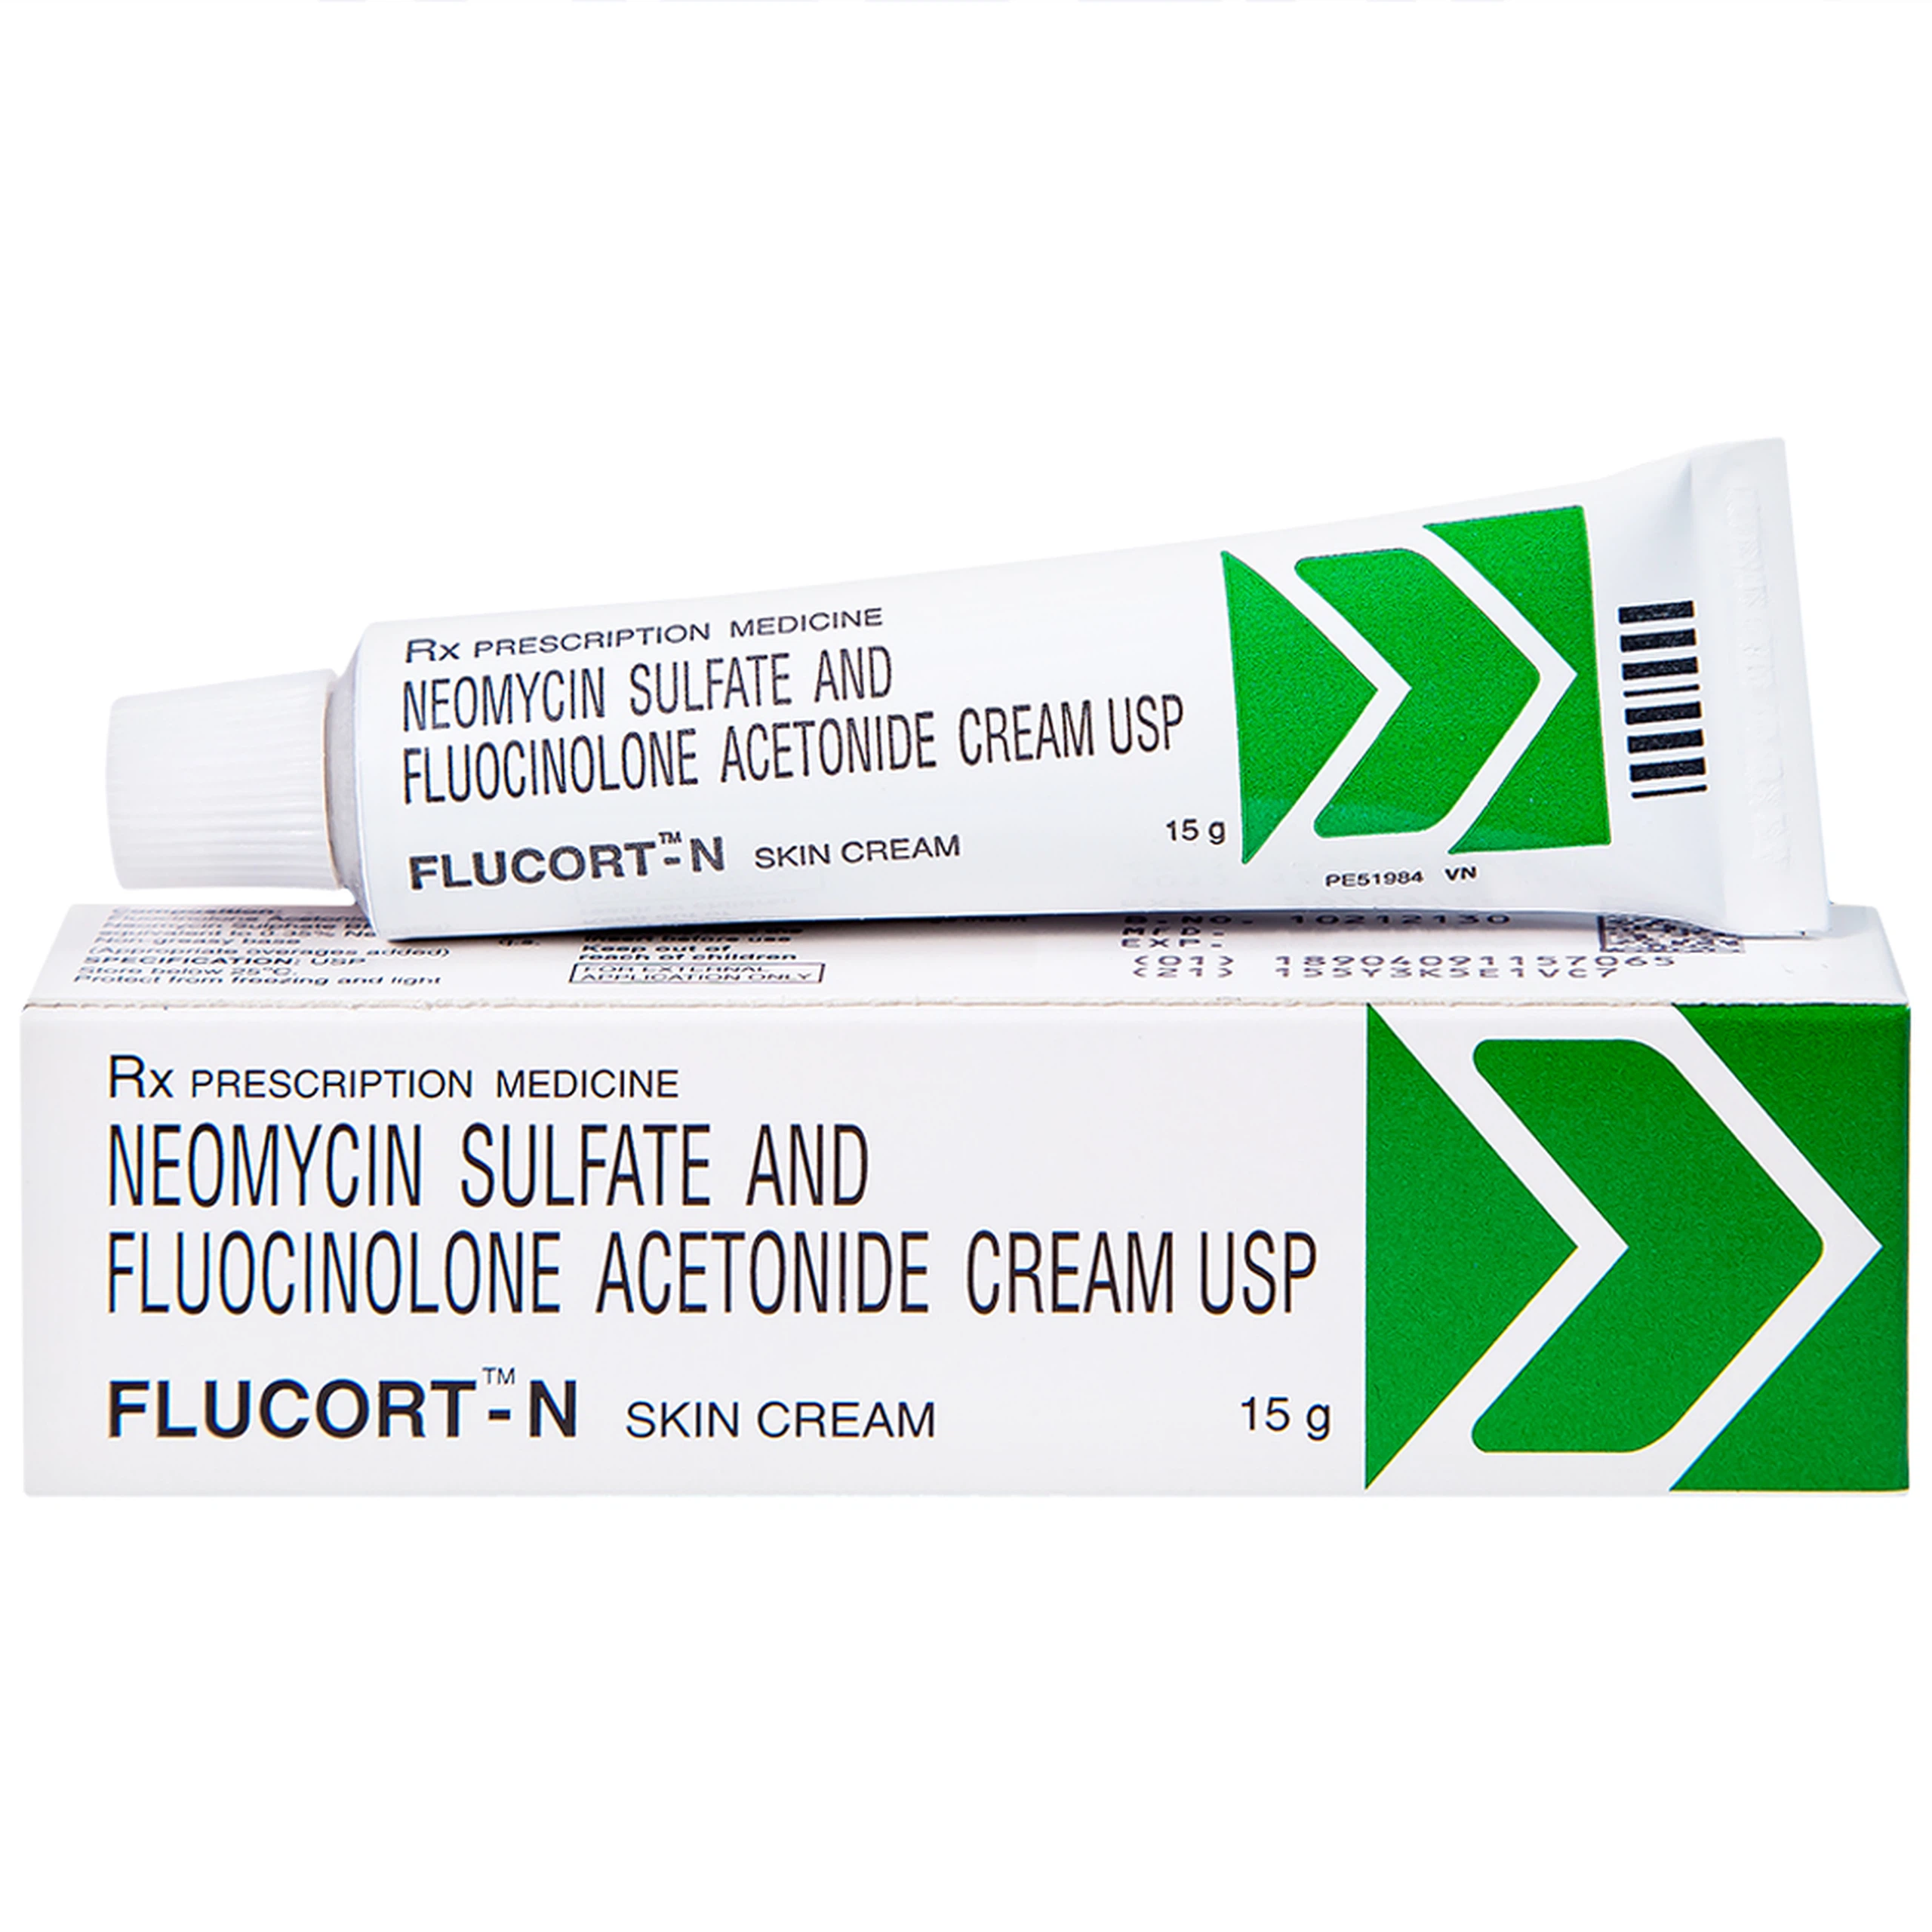 Kem Flucort-N Glenmark hỗ trợ điều trị các bệnh viêm da (15g)